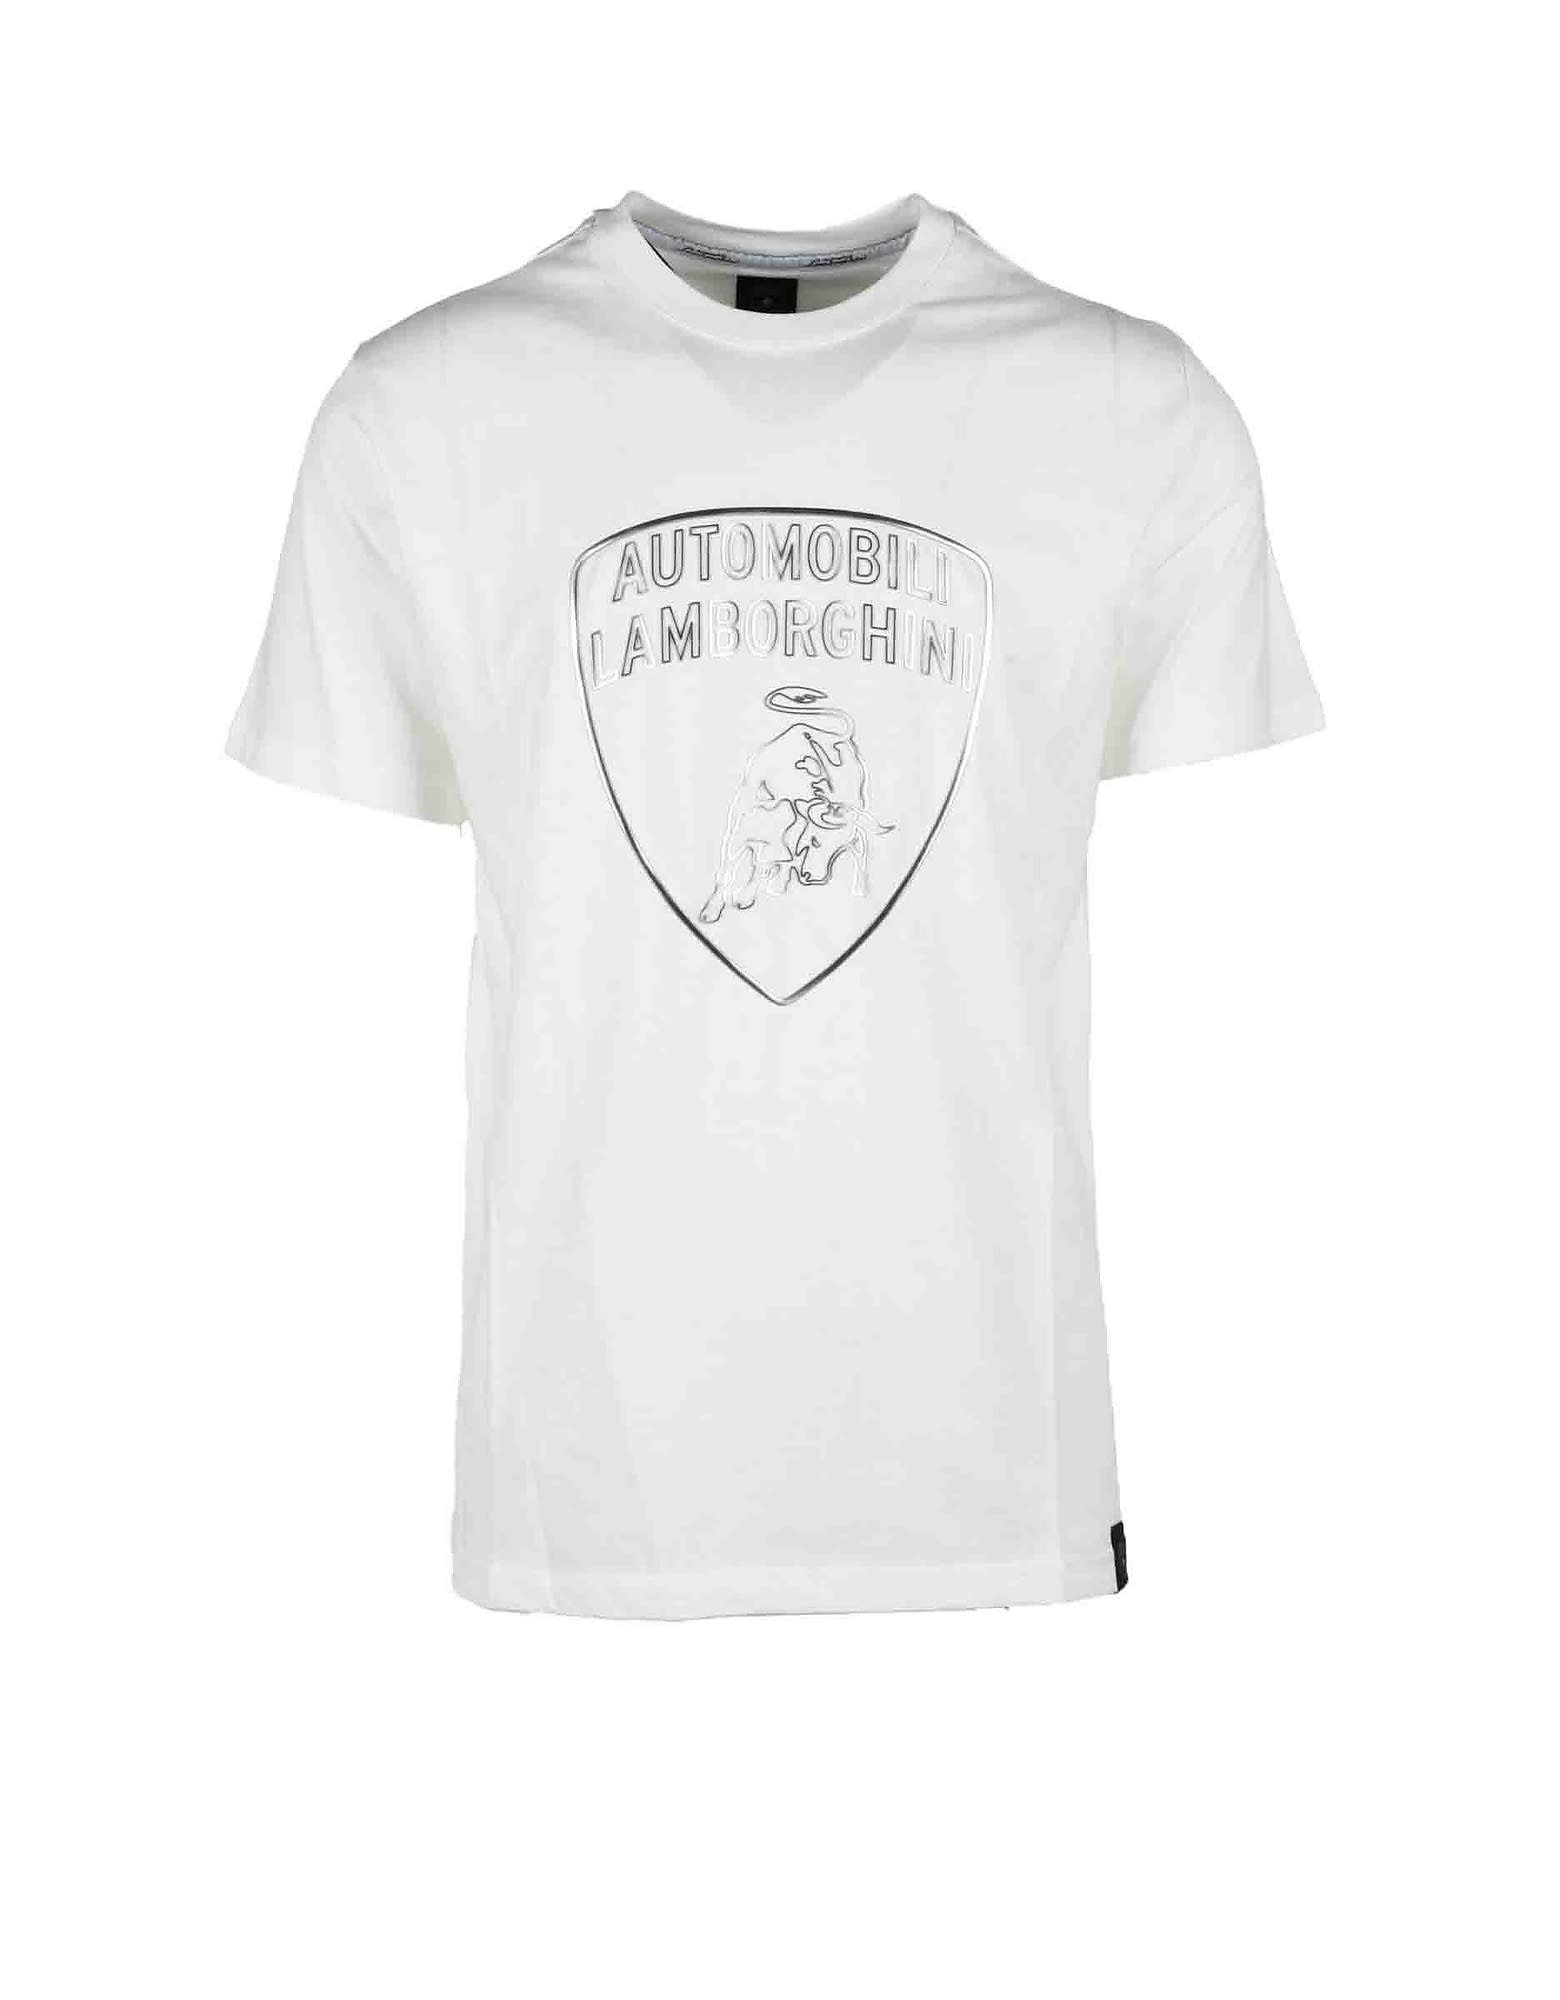 Automobili Lamborghini Mens White T-shirt